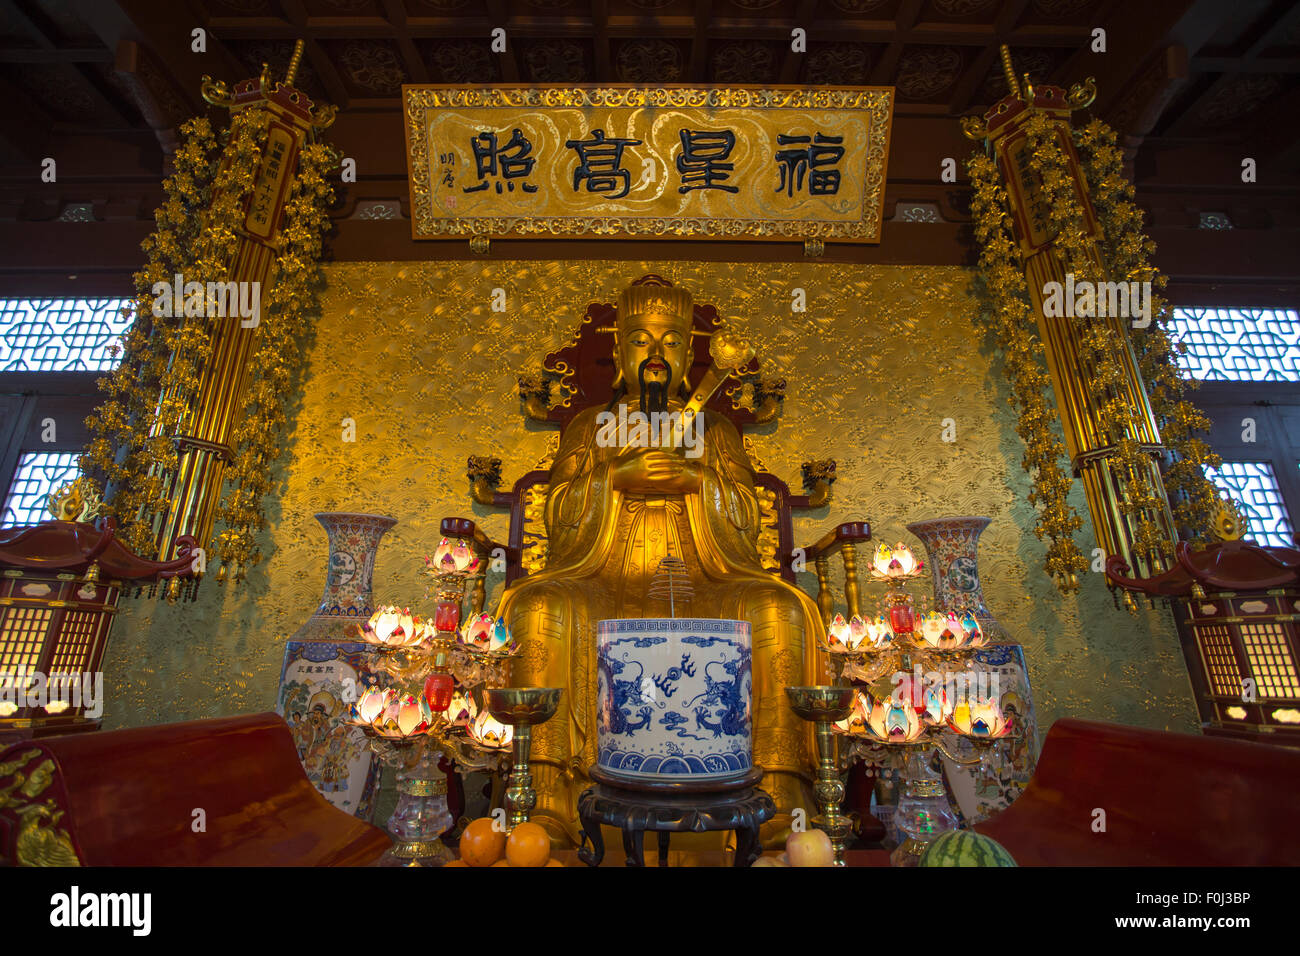 Vue panoramique de l'intérieur d'un temple à Hangzhou avec personne à l'intérieur Banque D'Images